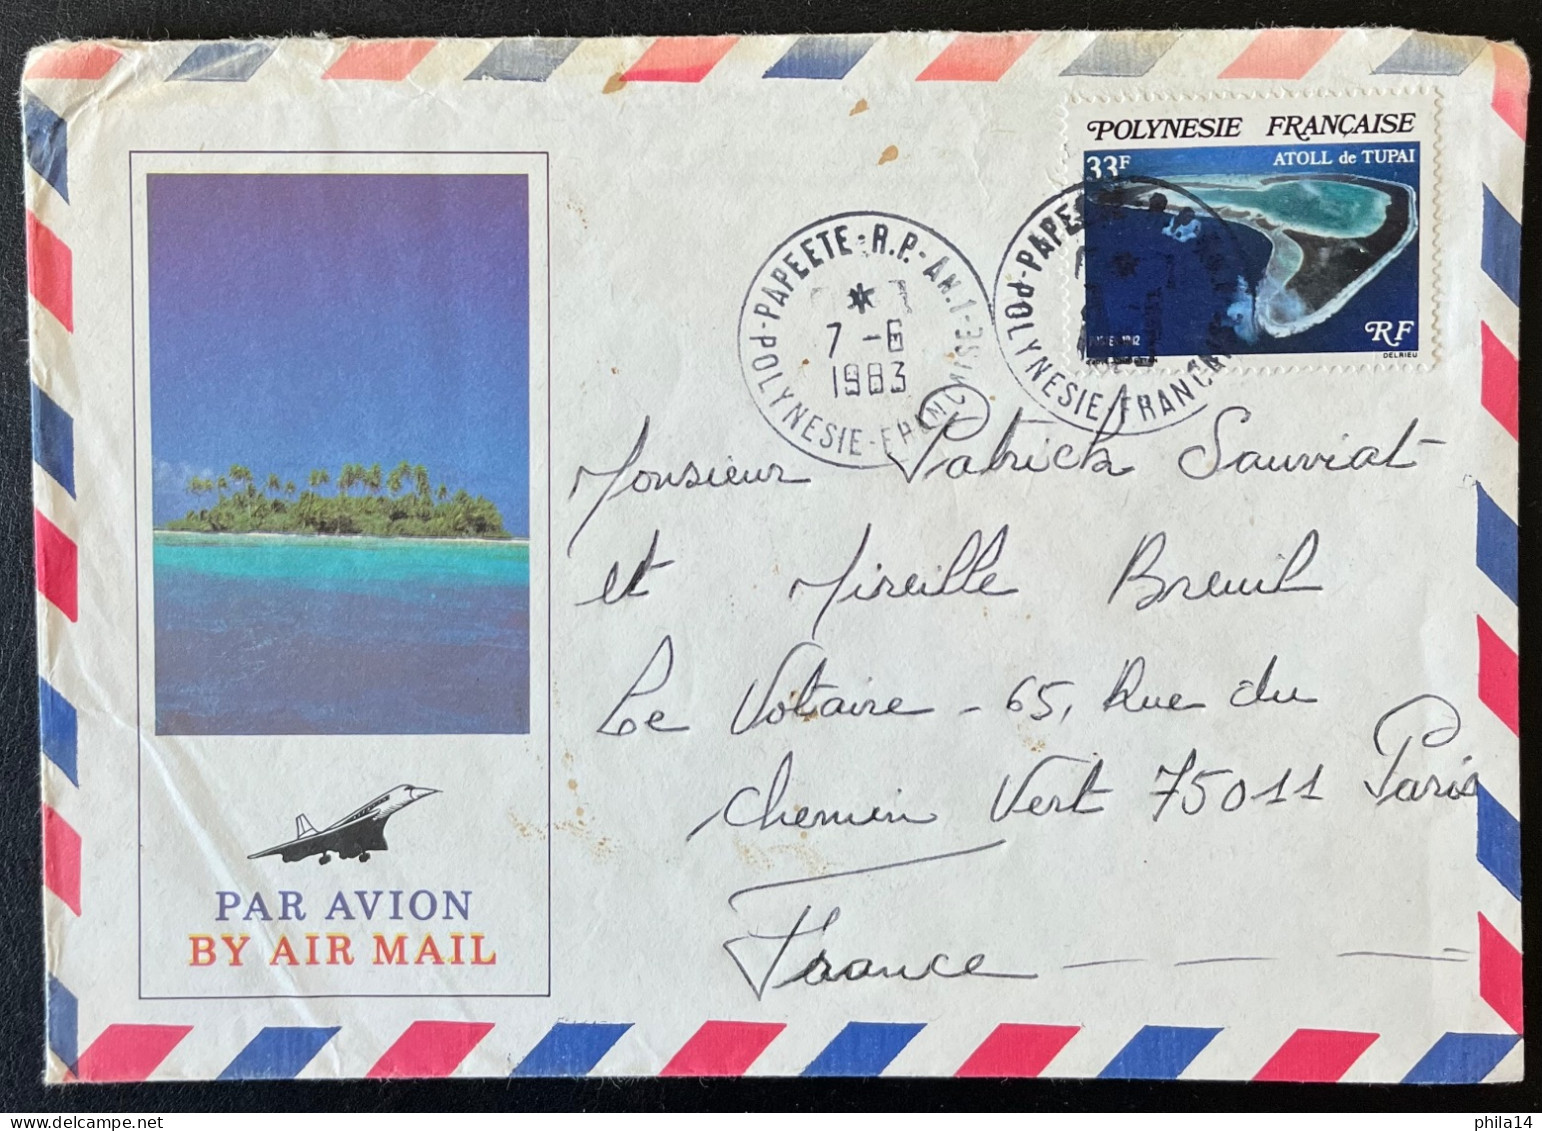 ENVELOPPE PAPEETE POLYNESIE FRANCAISE 1983 POUR PARIS  / ATOLL DE TUPAI - Tahiti